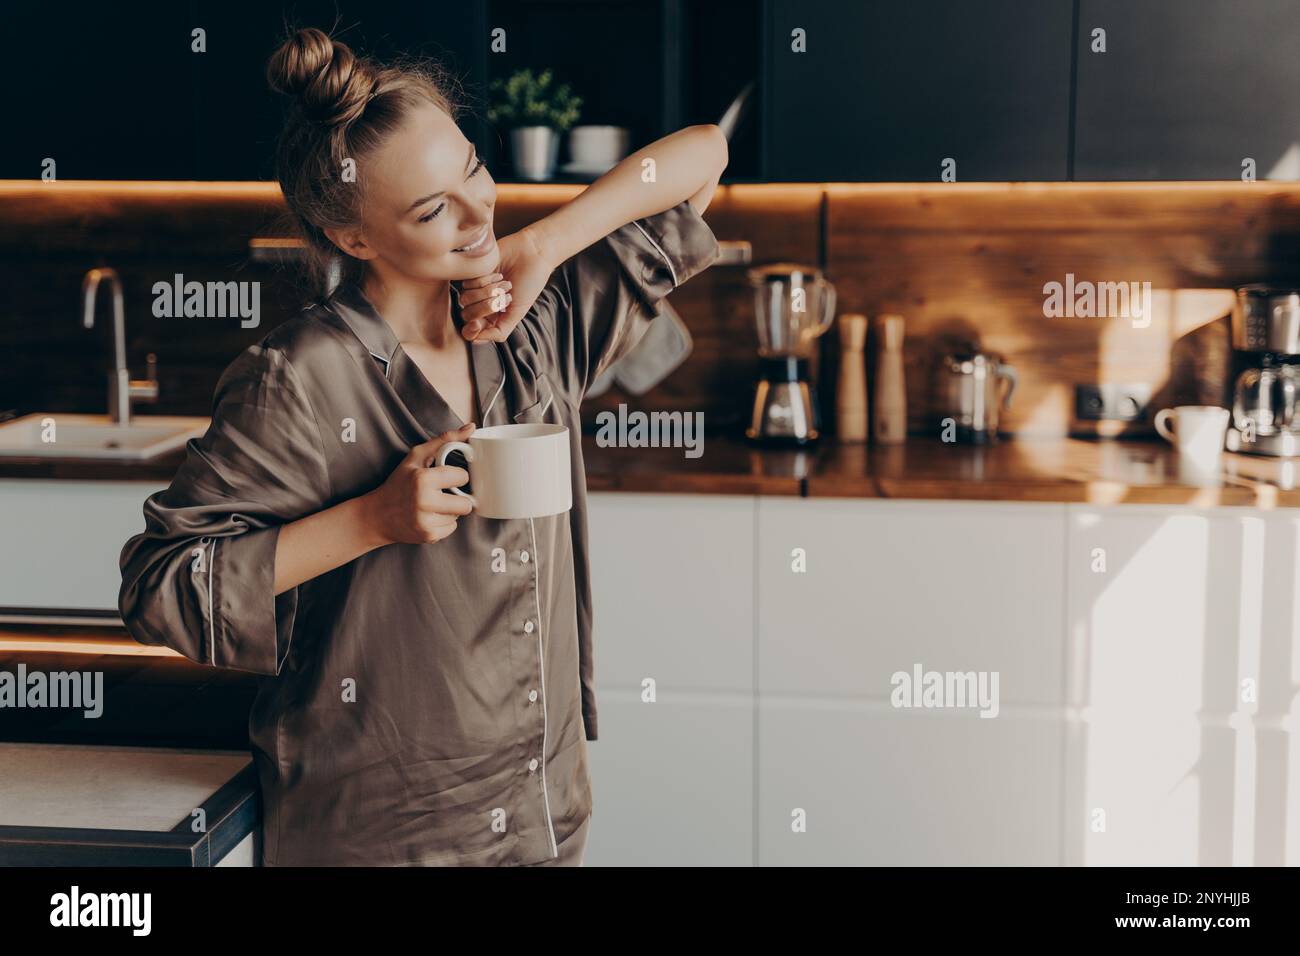 Eine junge, ziemlich entspannte Frau in einem bequemen Schlafanzug, die sich früh am Morgen aus dem Schlaf streckt, während sie eine Tasse Kaffee in der Hand hält und in einer stilvollen Küche steht Stockfoto